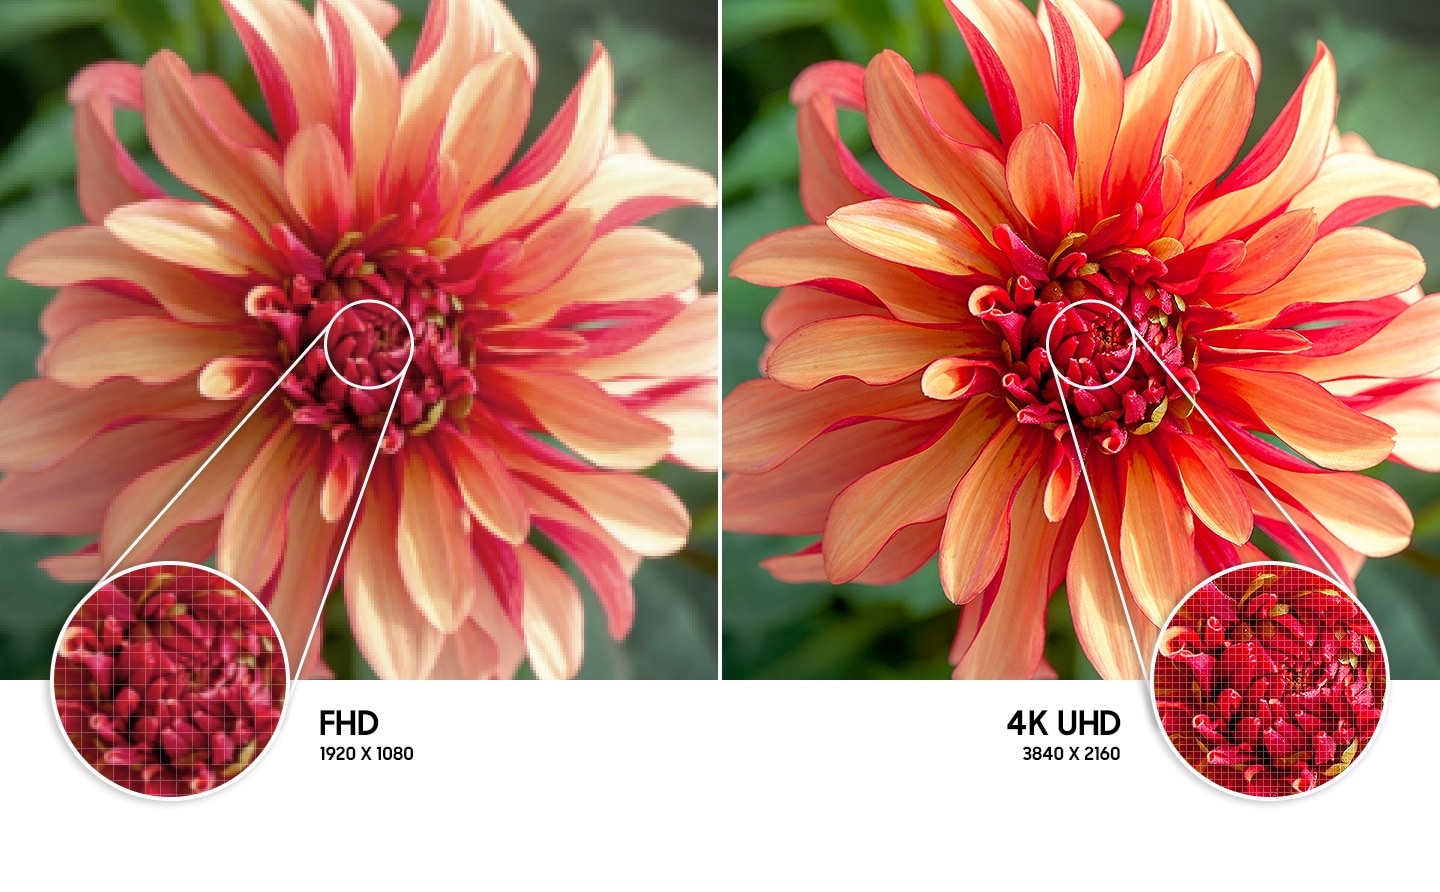 Hình ảnh bông hoa bên phải cho thấy độ phân giải hình ảnh chất lượng cao hơn được tạo ra bởi công nghệ 4K UHD so với bên trái.